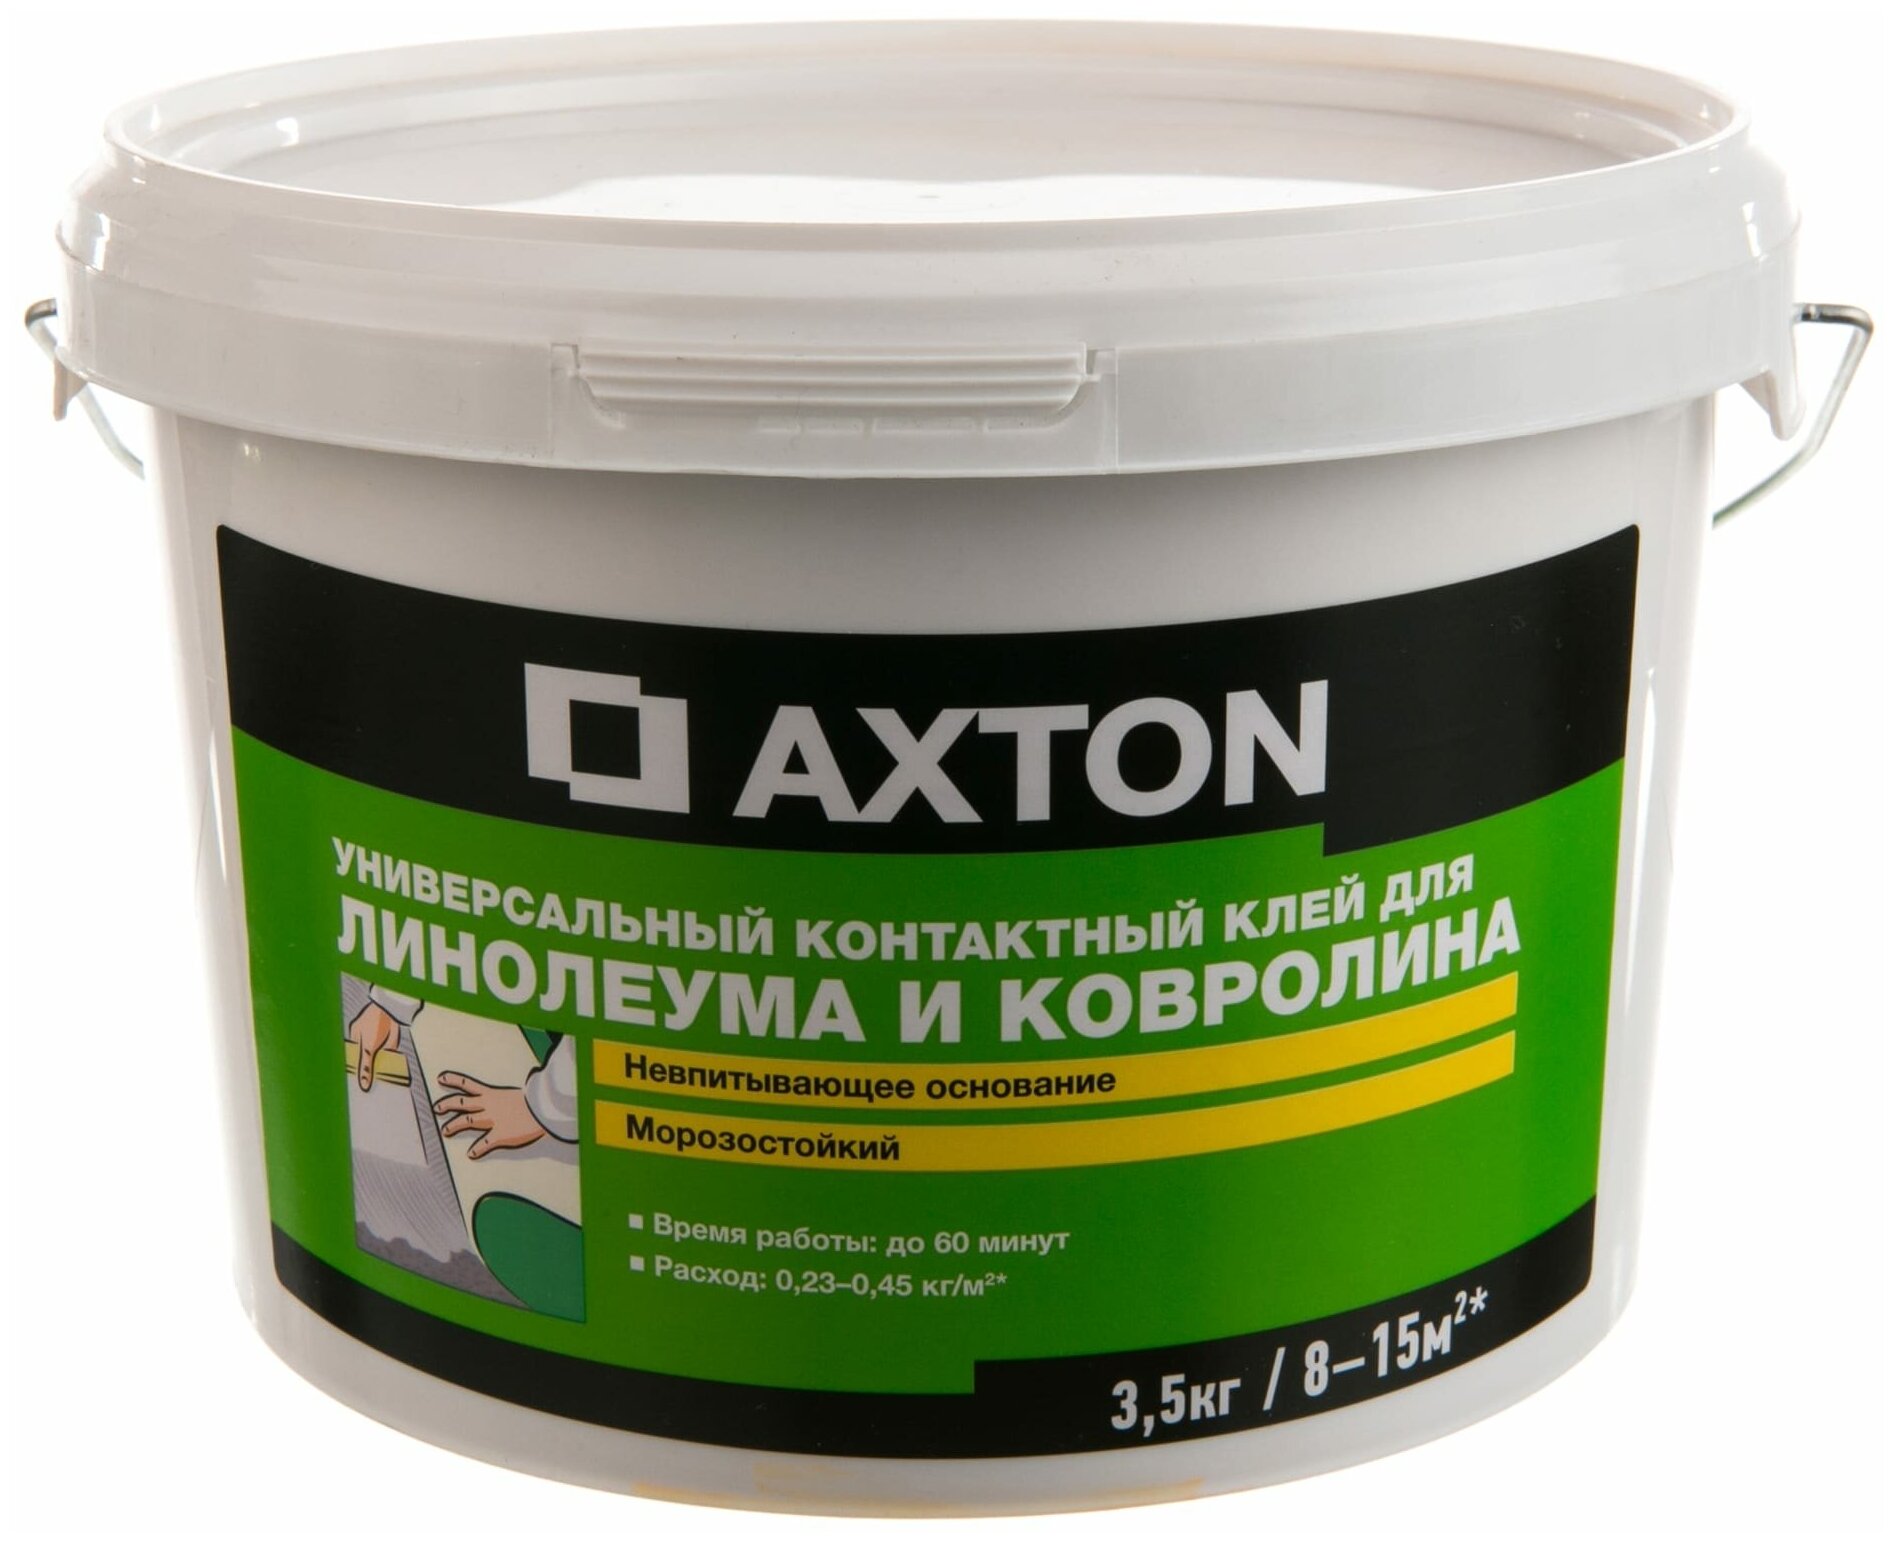 AXTON Клей Axton универсальный контактный для линолеума и ковролина 3.5 кг